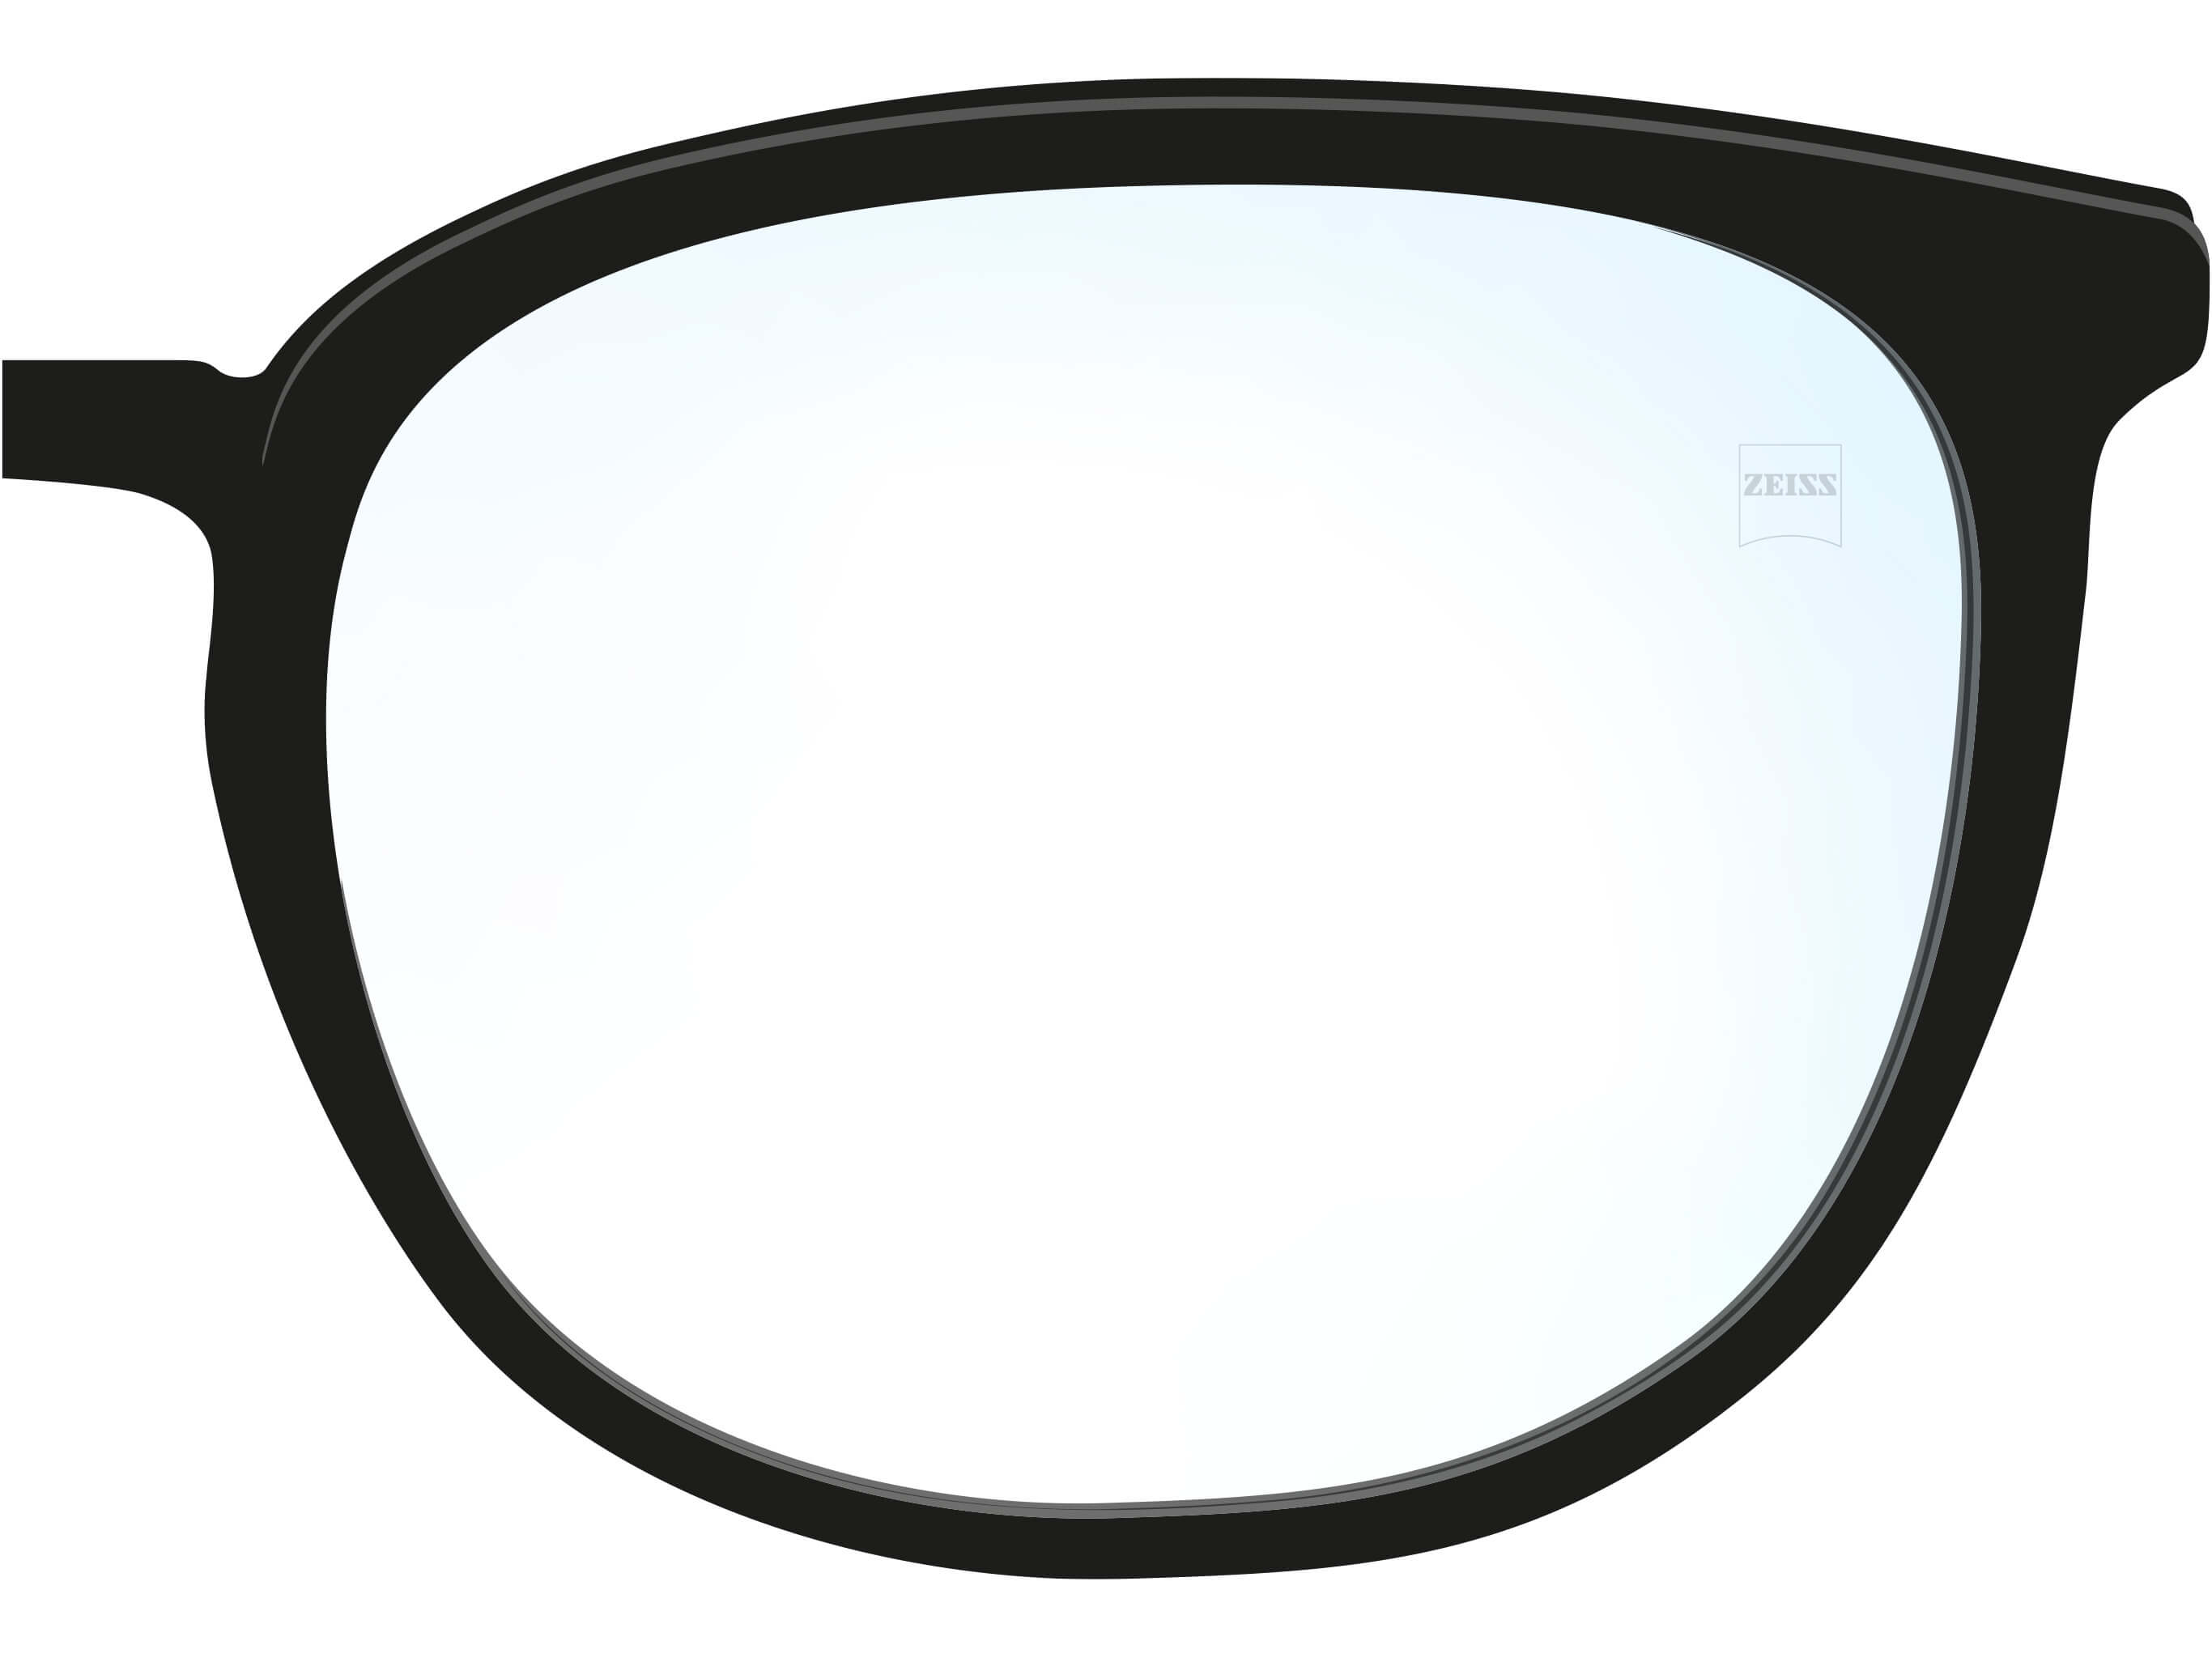 vis lunettes - composants pour opticiens - Lapeyre optique